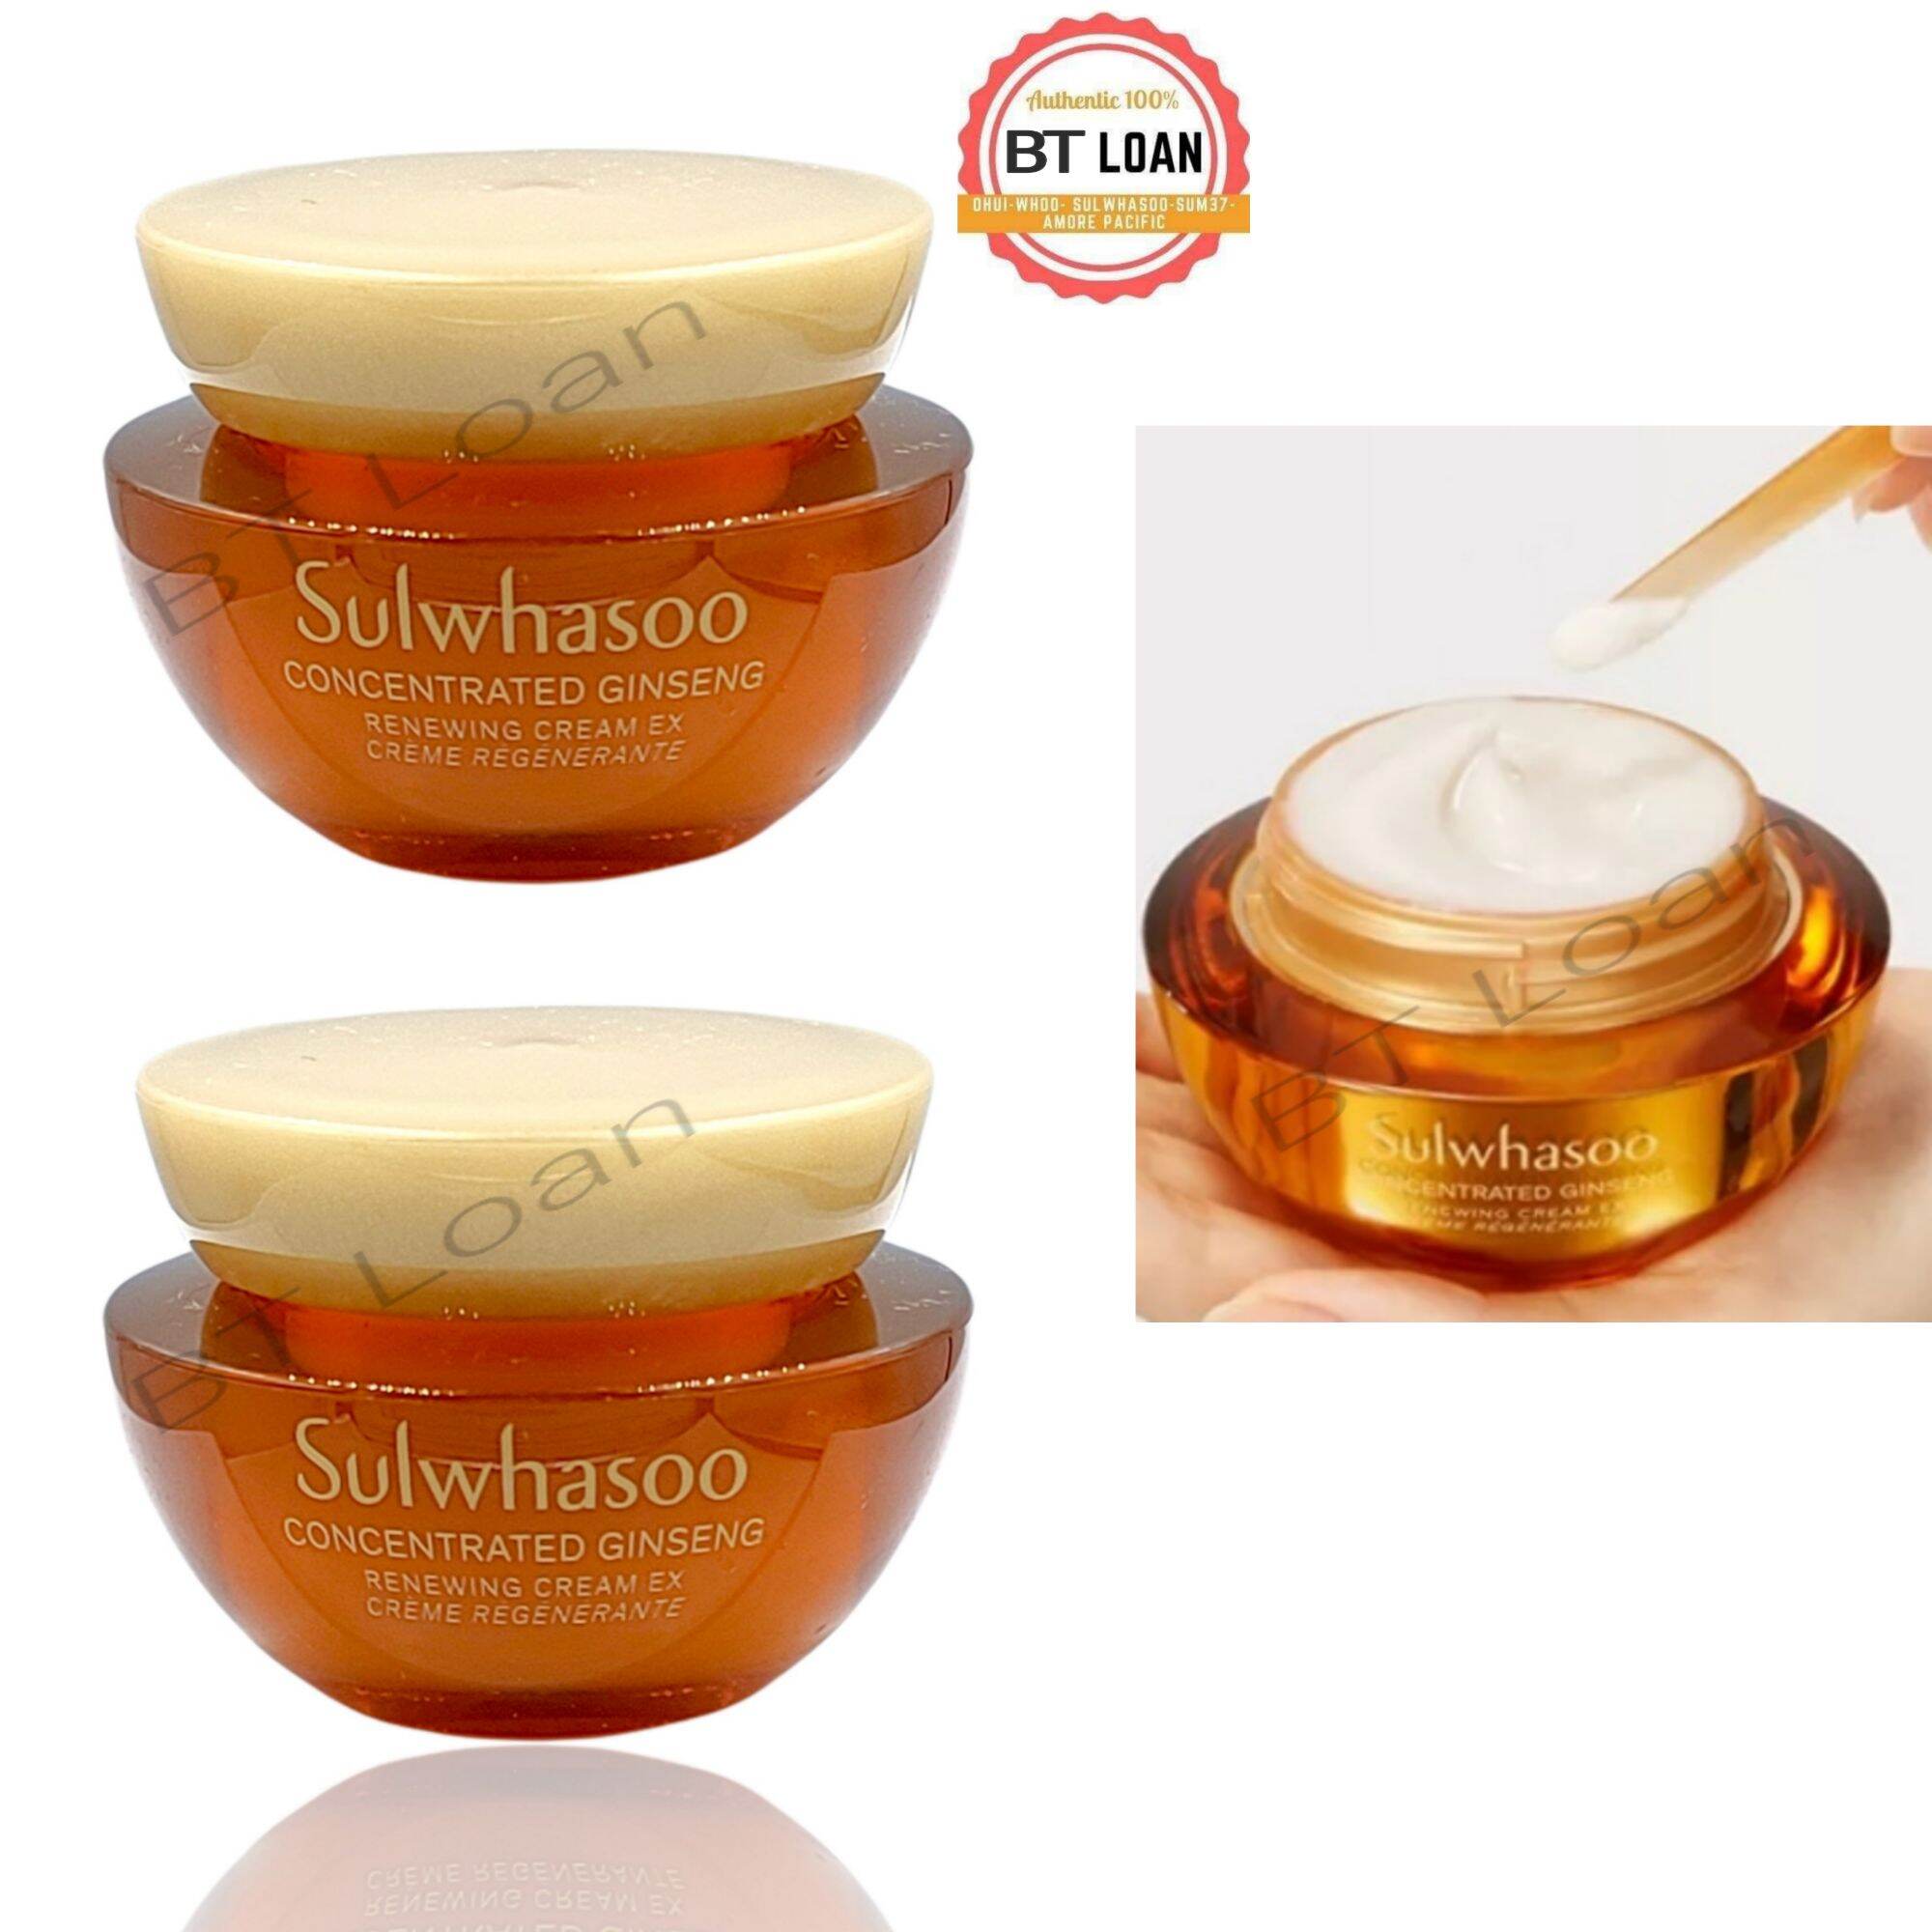 [HCM]Kem tái tạo da từ nhân sâm cô đặc Sulwhasoo Concentrated Ginseng Renewing Cream ex 5ml mới sản phẩm có nguồn gốc xuất xứ rõ ràng dễ dàng sử dụng cam kết sản phẩm y như hình